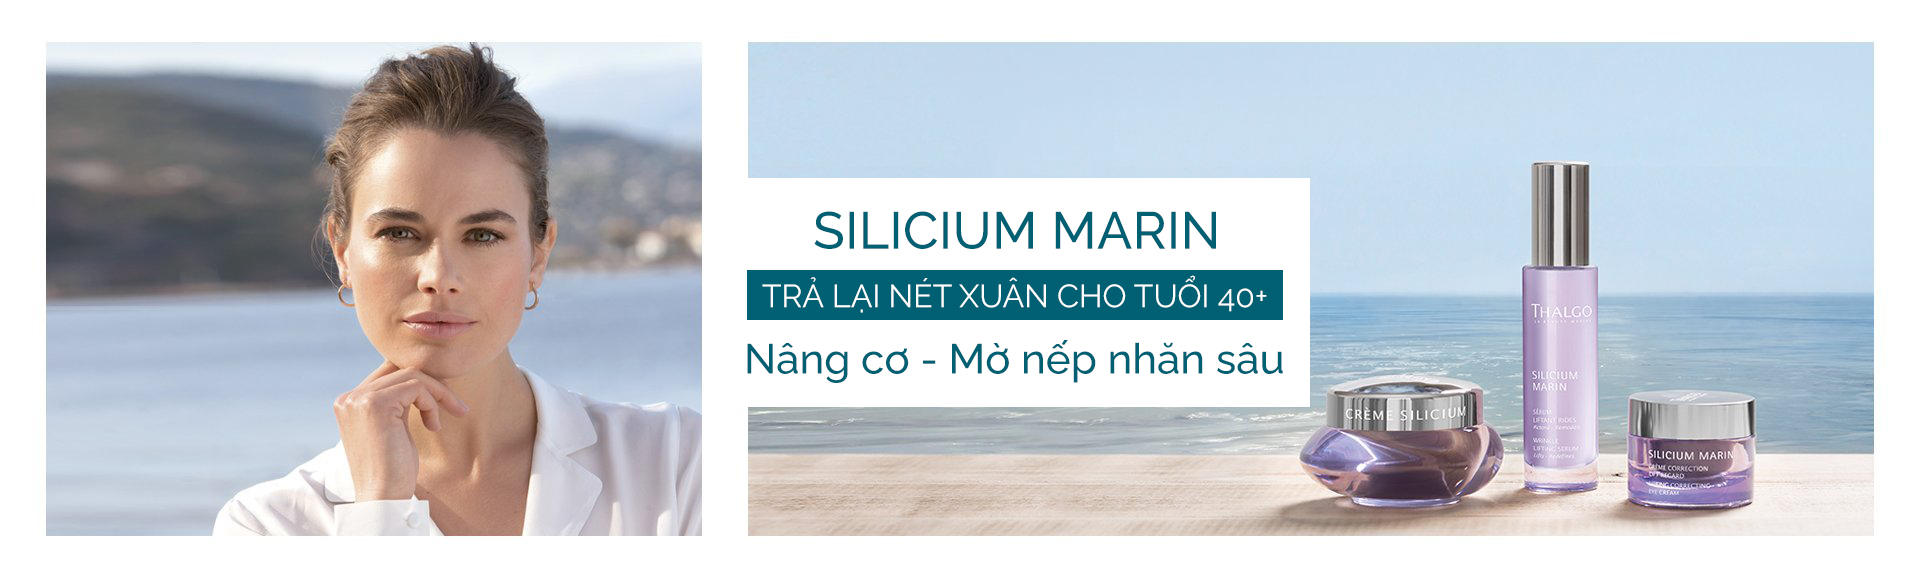 Silicium Marin